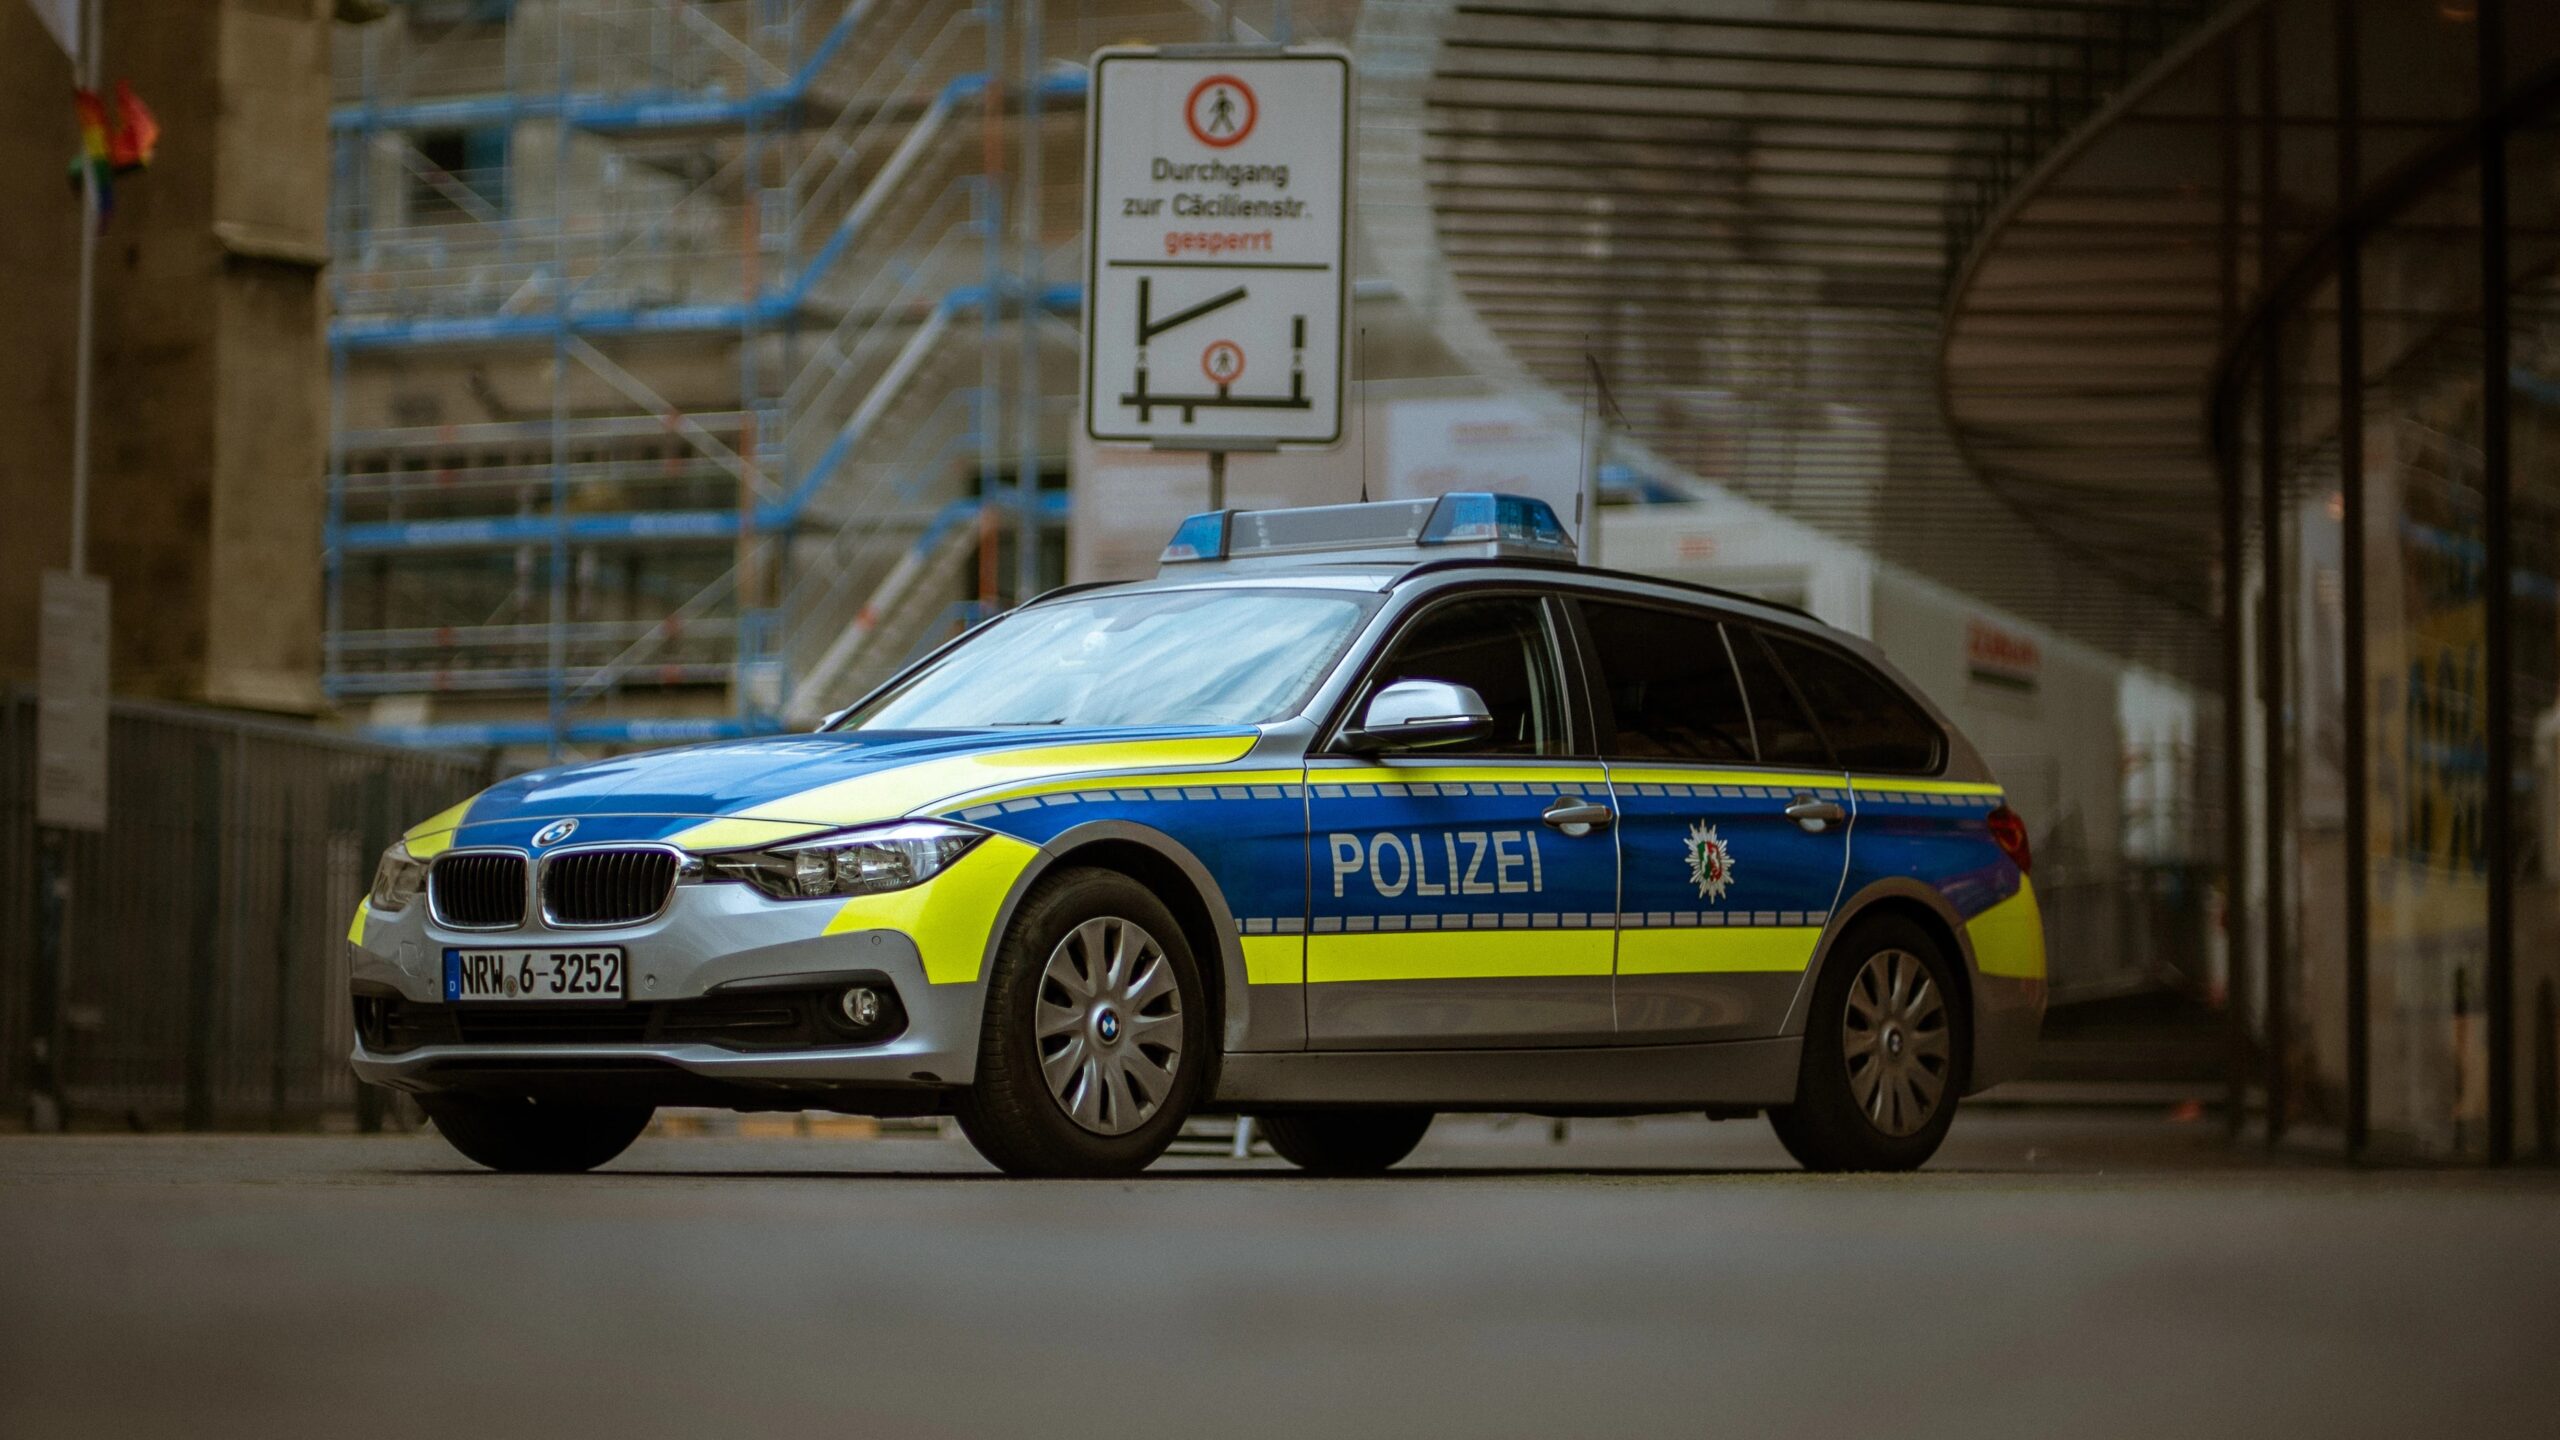 Gelsenkirchen-Schalke: Polizei sucht 69 Tatverdächtige nach Fußballausschreitungen